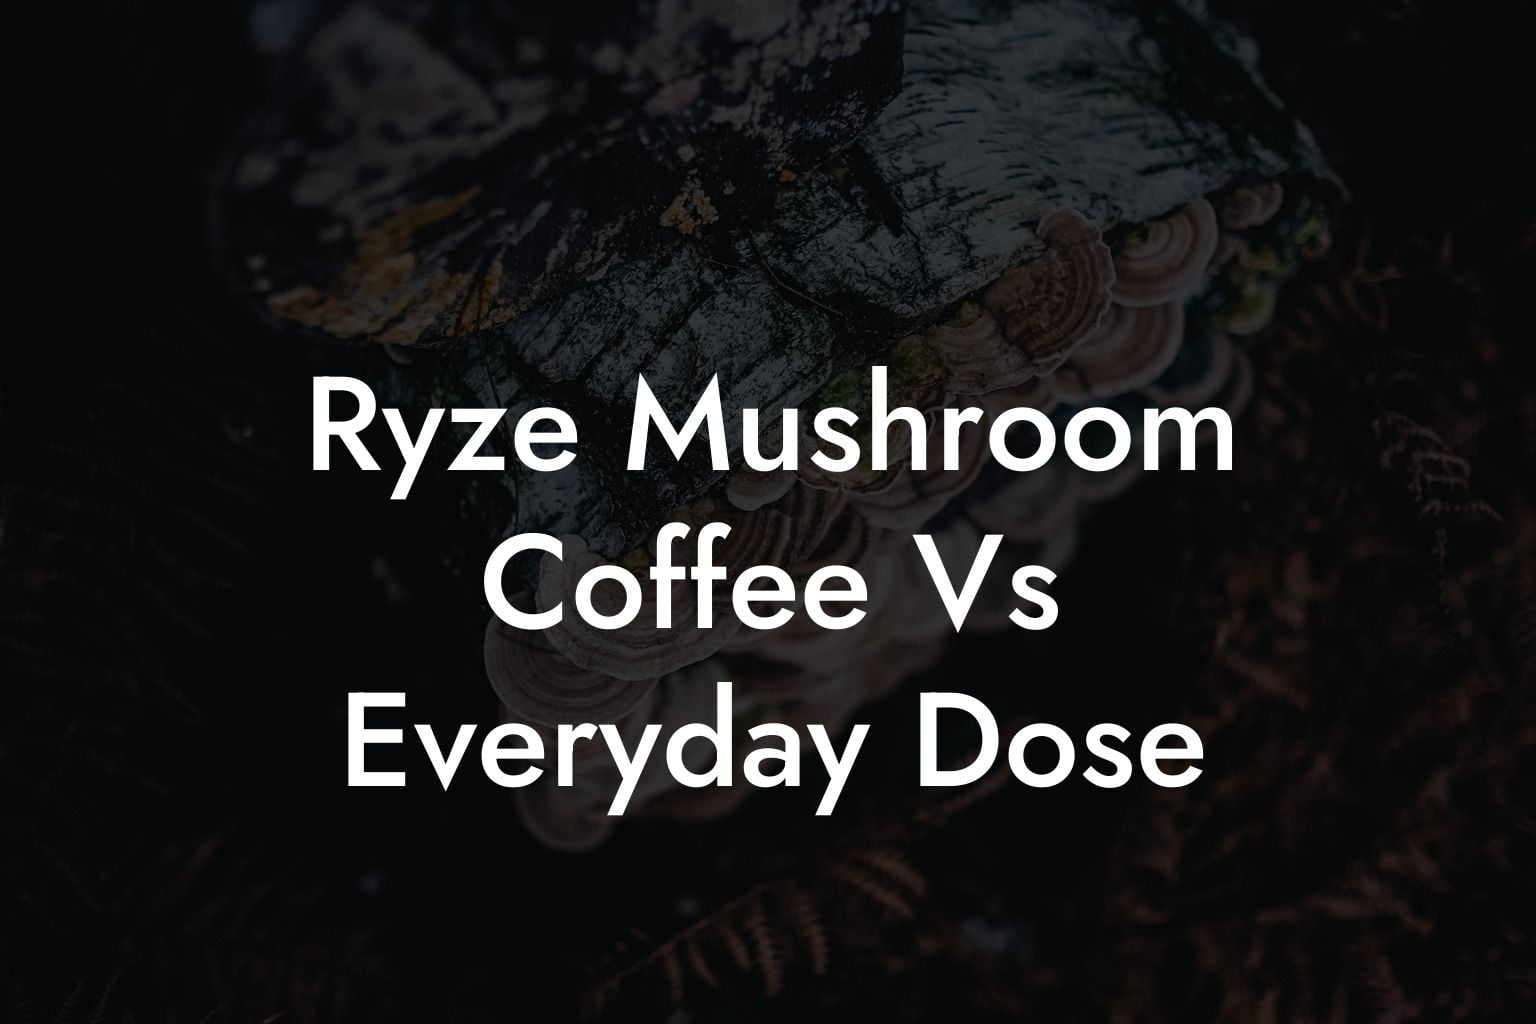 Ryze Mushroom Coffee Vs Everyday Dose